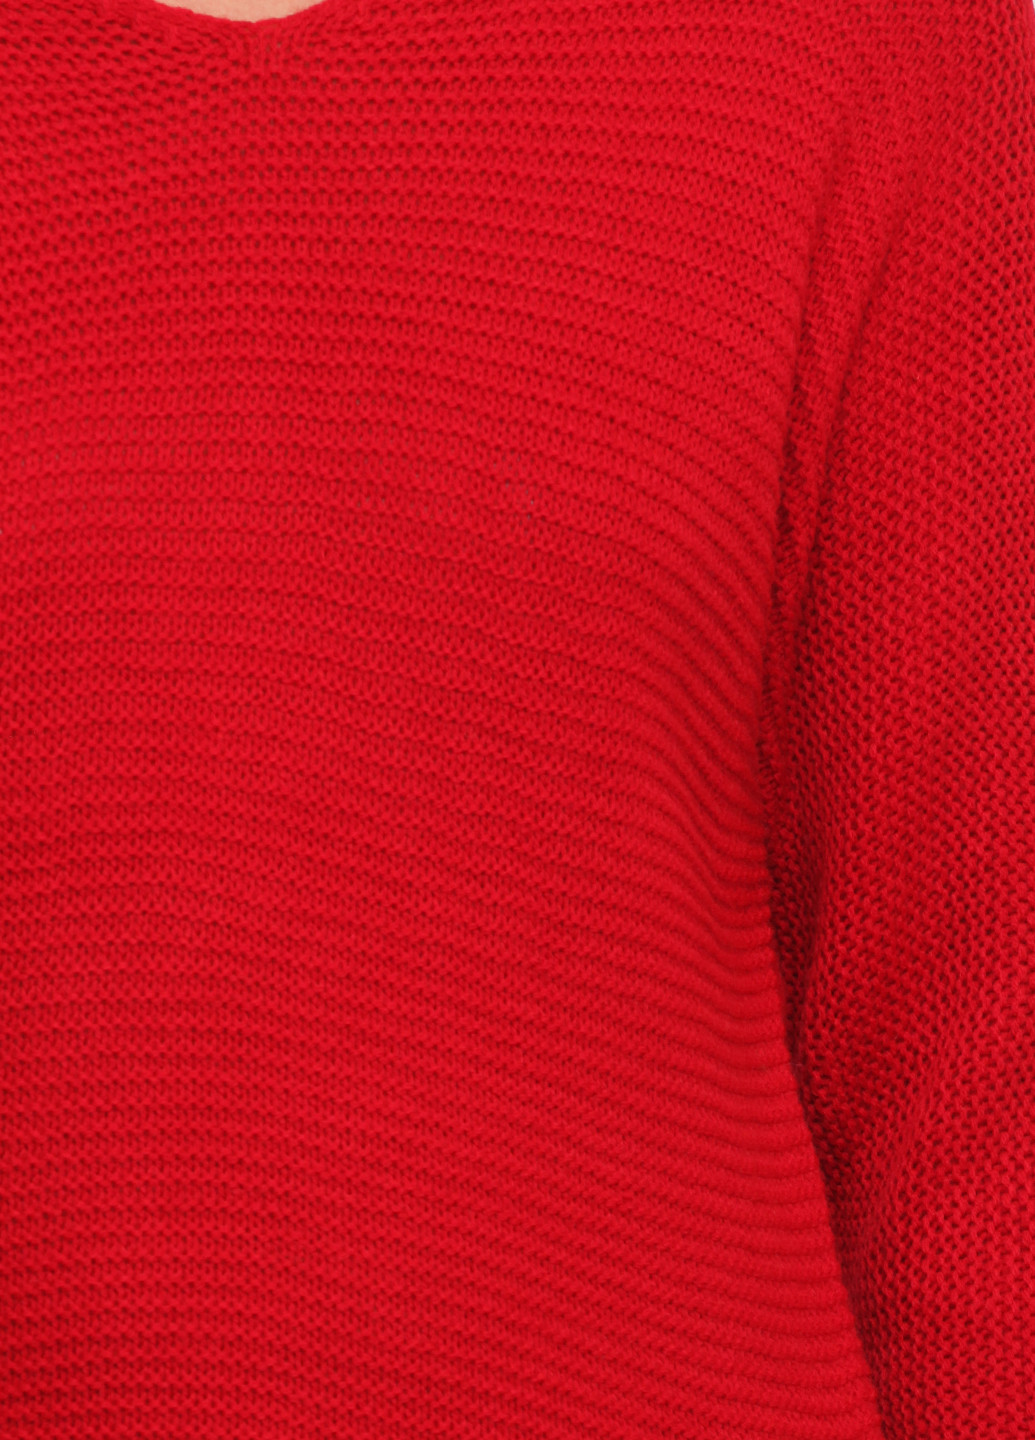 Вишневий демісезонний пуловер пуловер Metin Triko